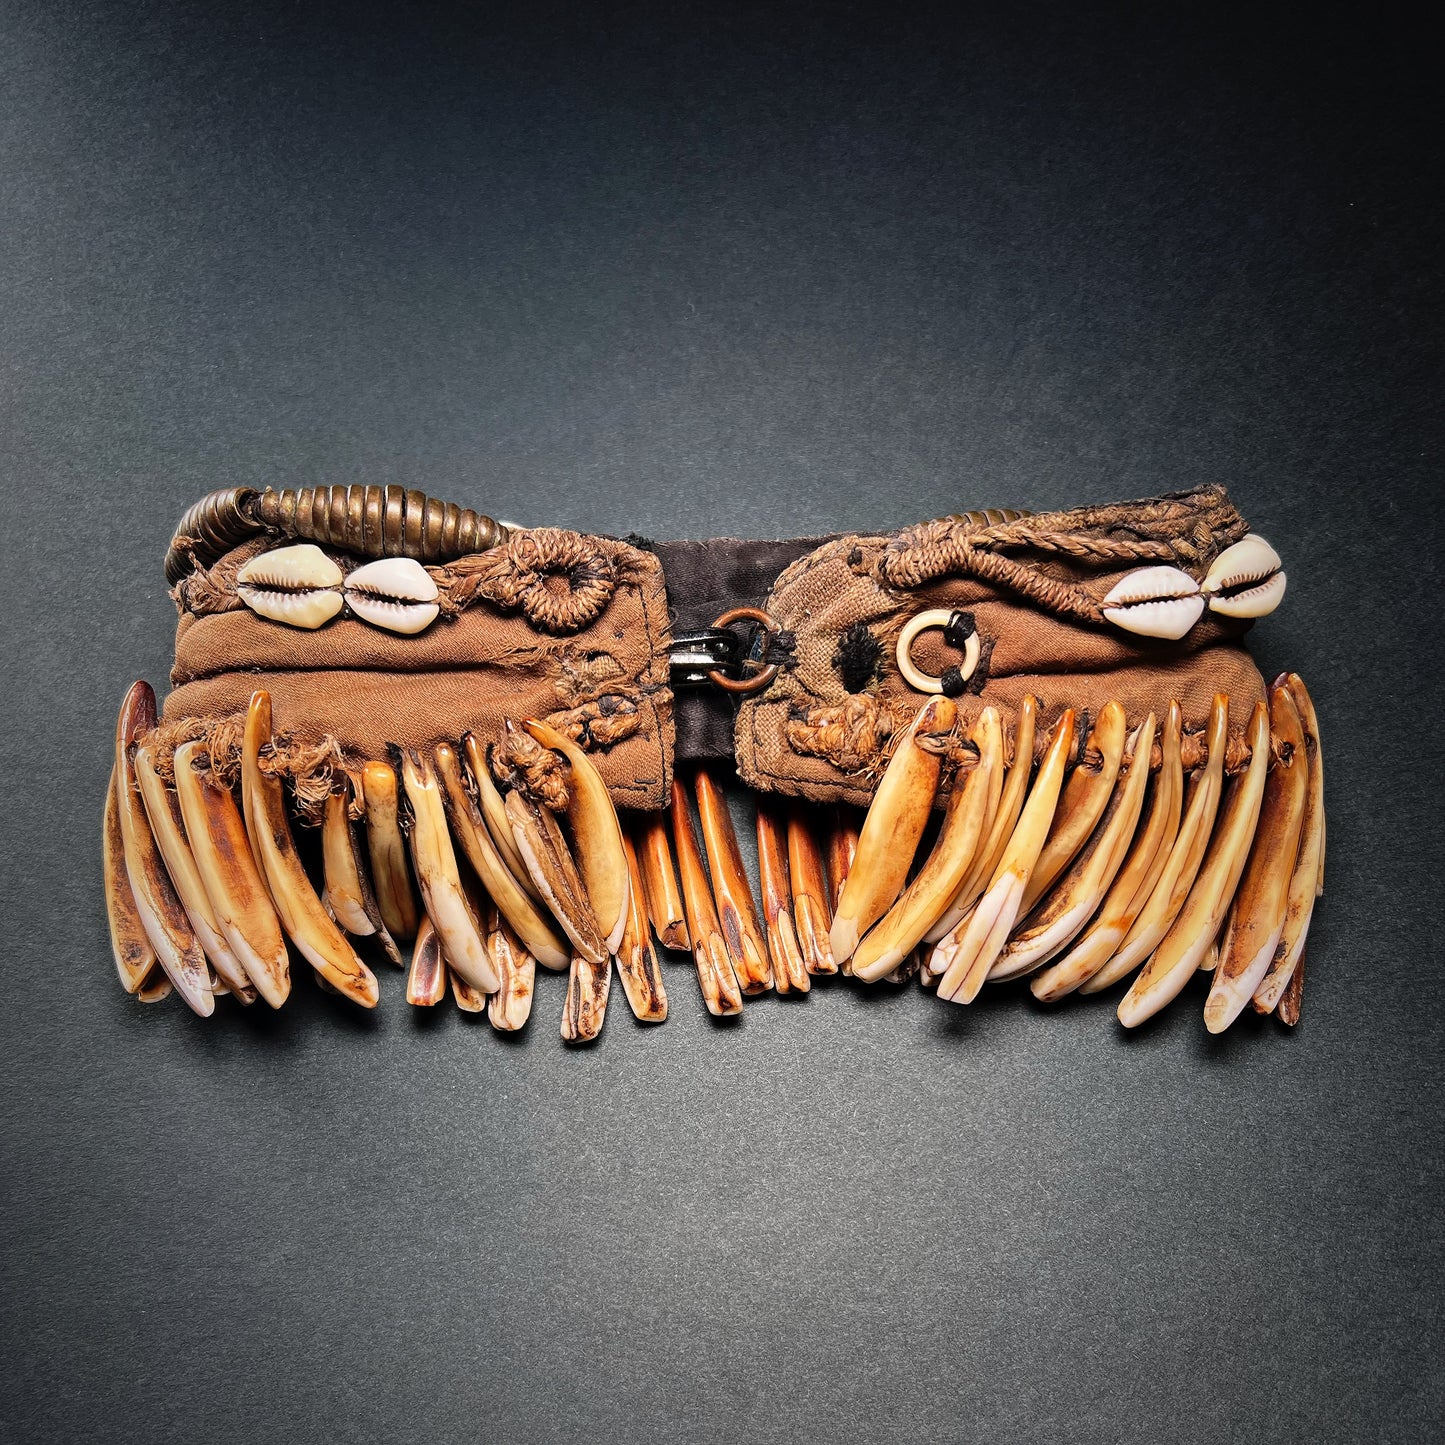 Konyak Naga Bronze and Teeth Pectoral Ornament